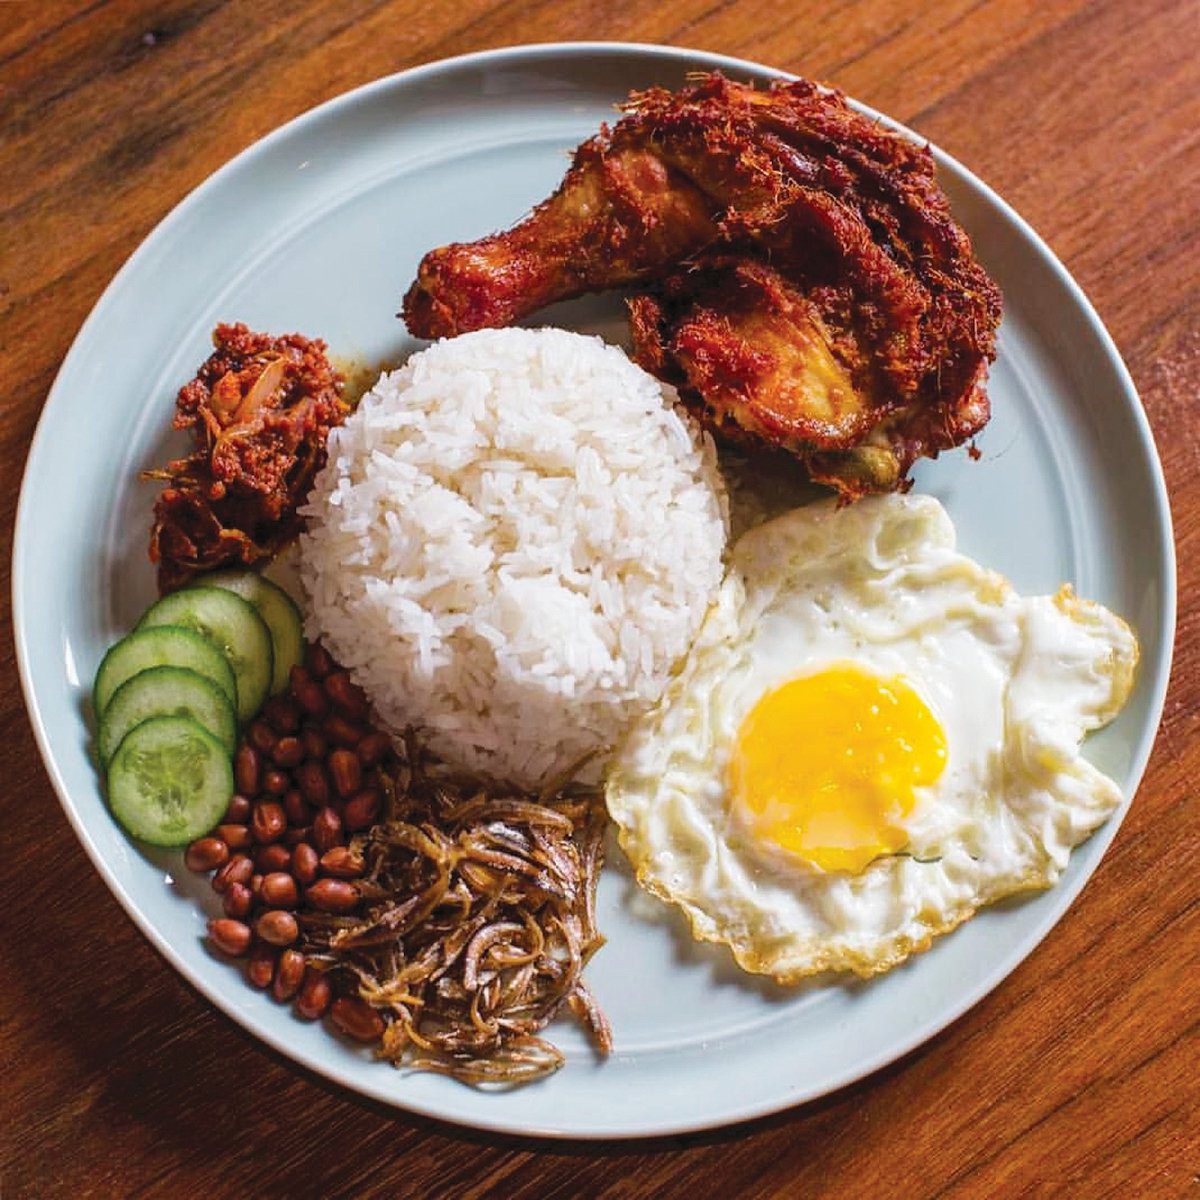 MAKANAN popular tempatan seperti nasi lemak kini sudah mempunyai maklumat GI hasil usaha lima saintis Malaysia dan Singapura.